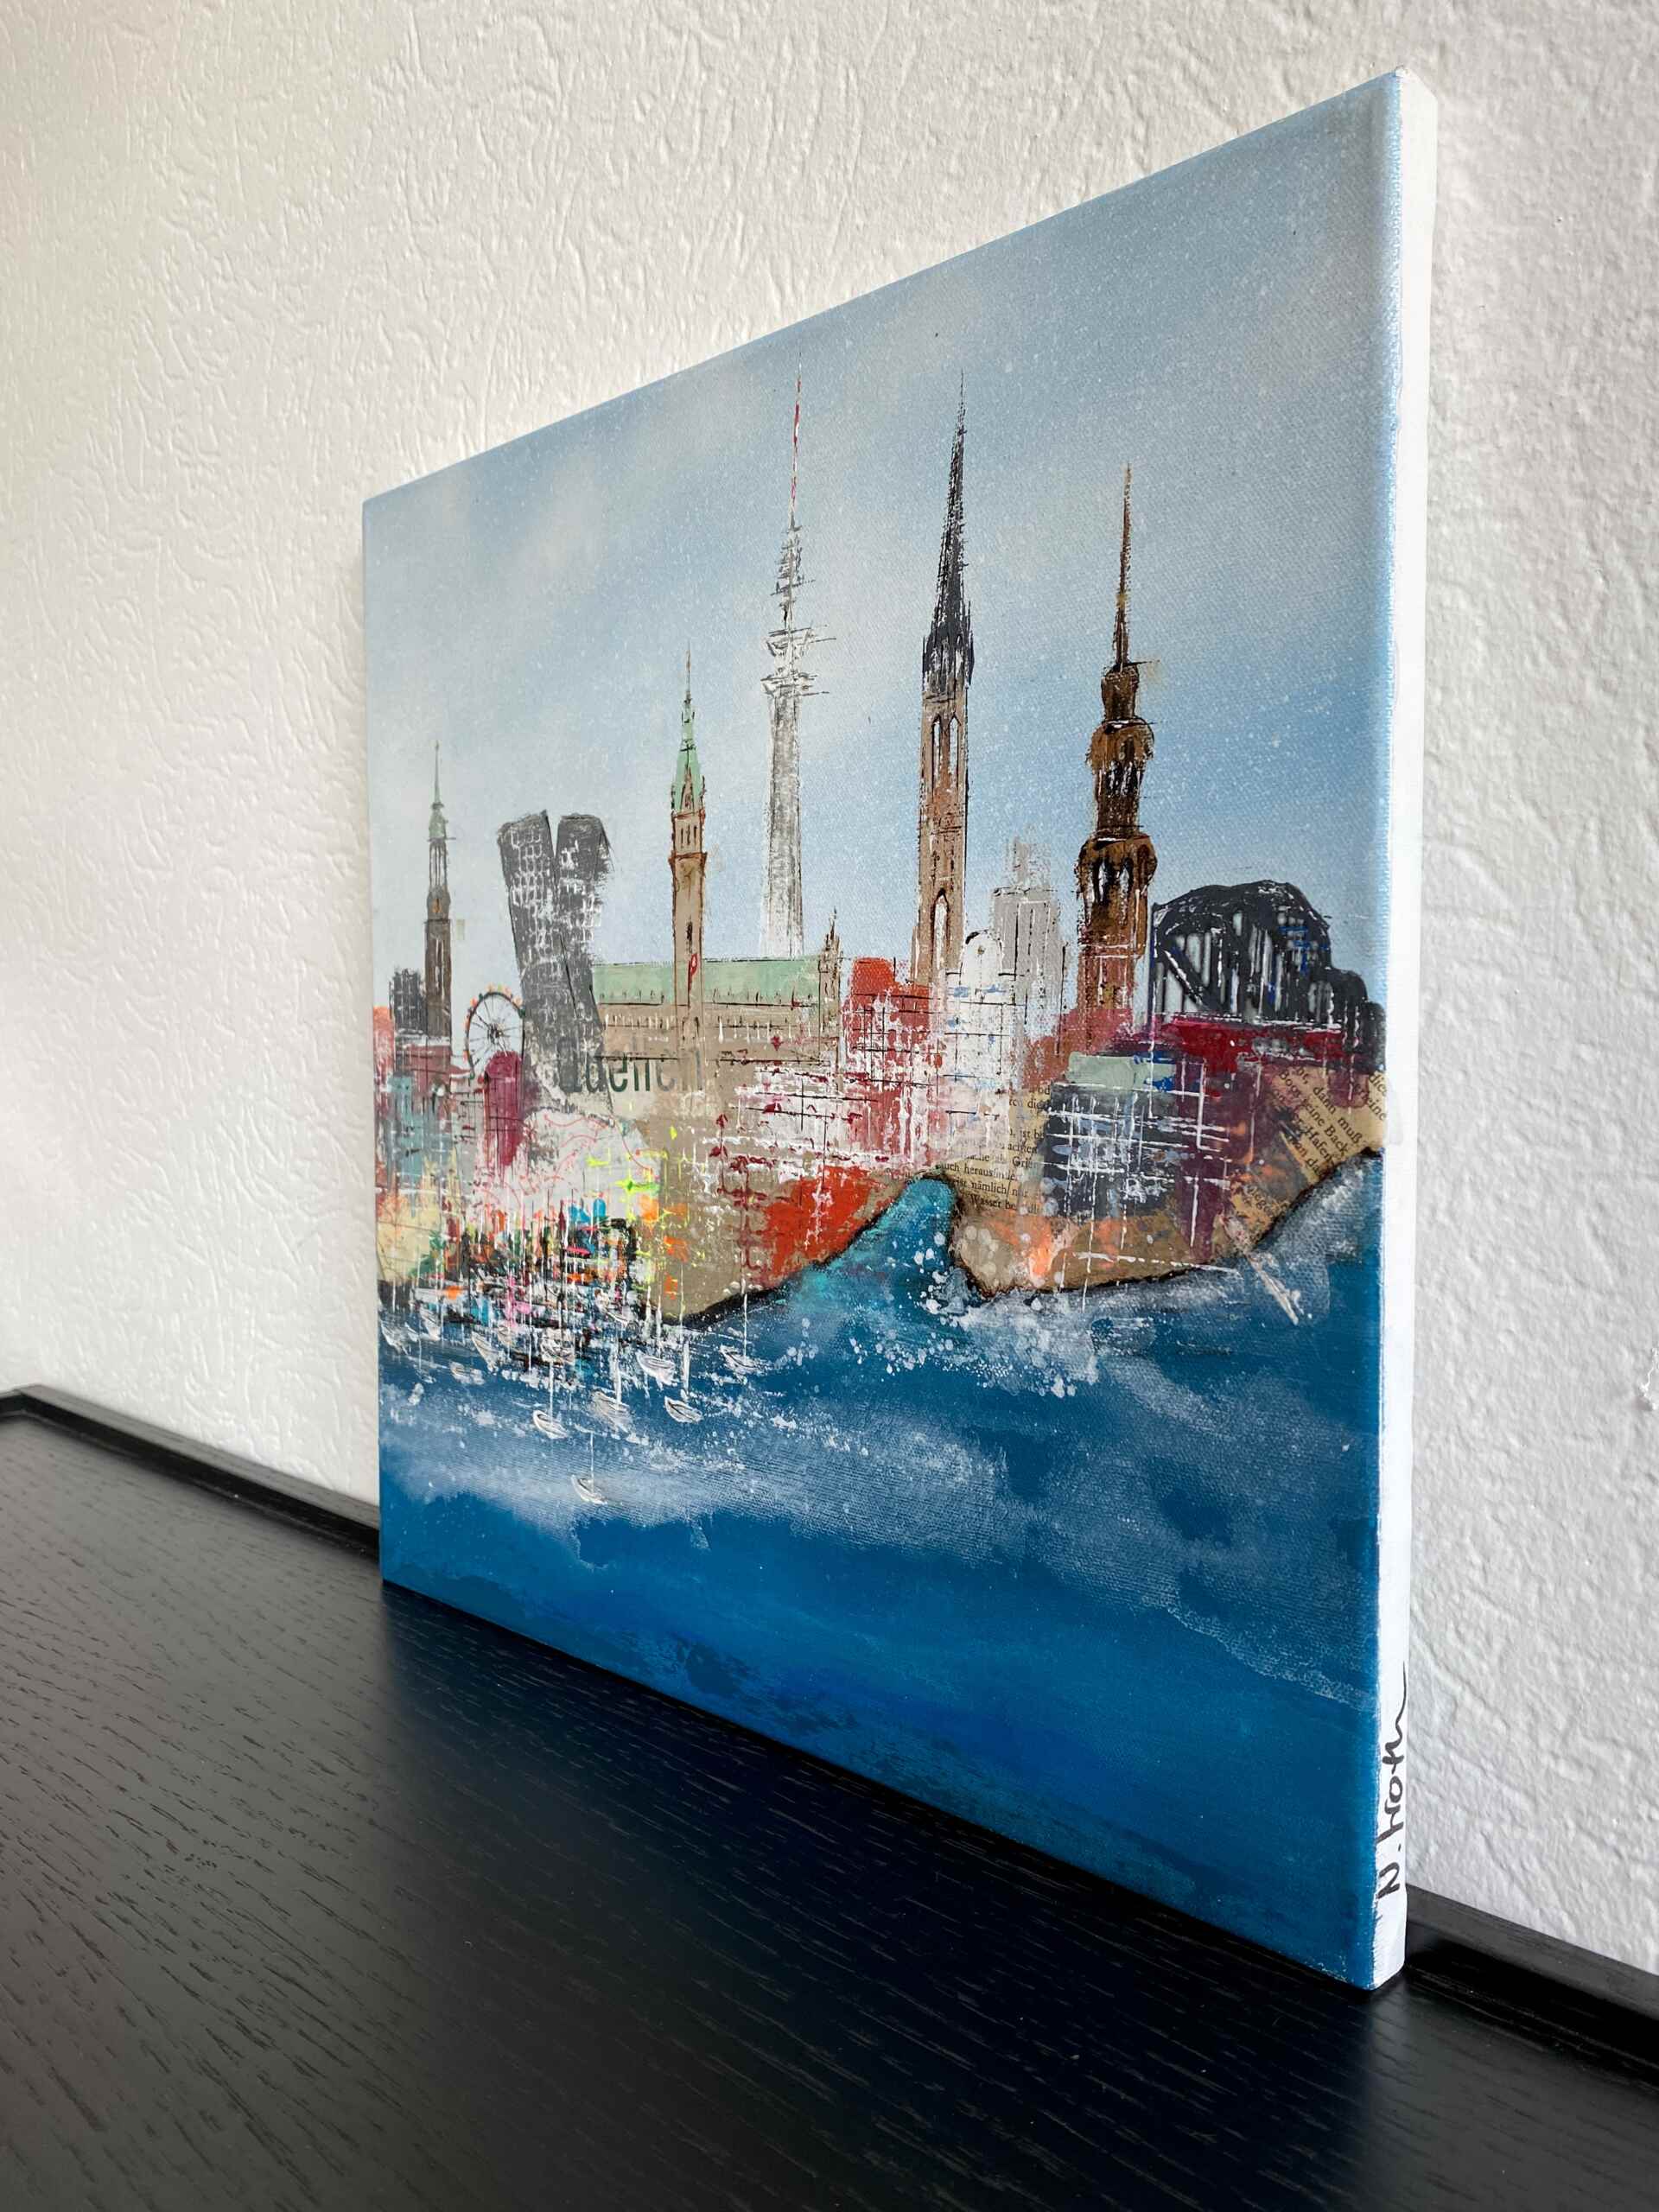 Side view of artwork "Inspiring Hamburg No 2” by Nina Groth